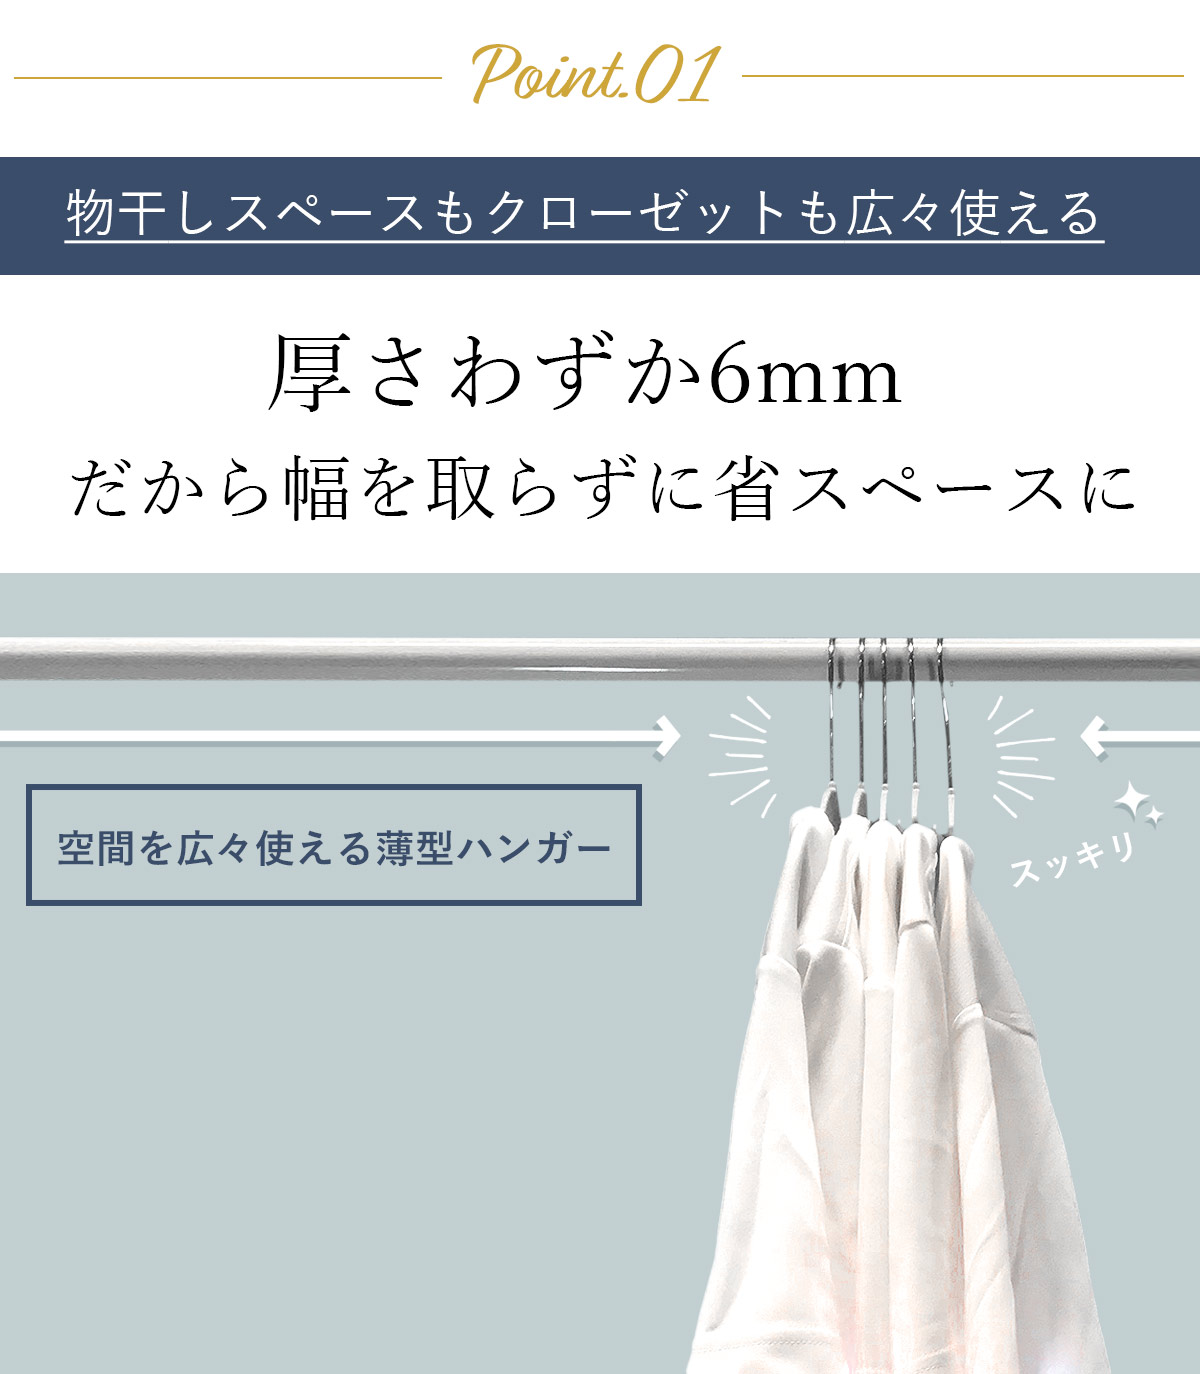 【楽天市場】樹脂製多機能ハンガー 10本セット 41.5cm すべらない